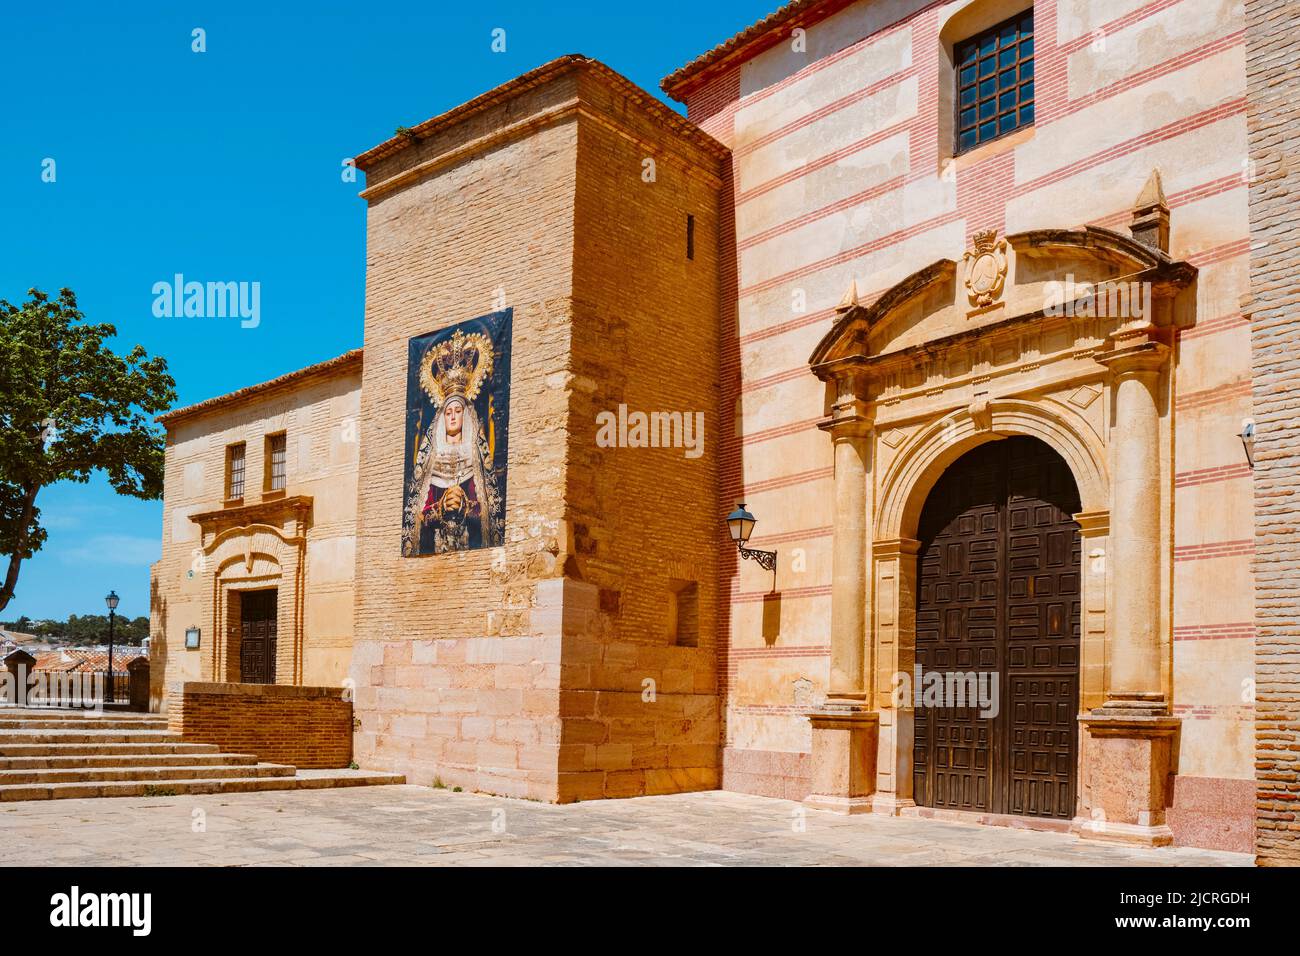 Una vista della facciata della chiesa di Iglesia del Carmen ad Antequera, in provincia di Malaga, in Spagna, in una giornata di sole Foto Stock